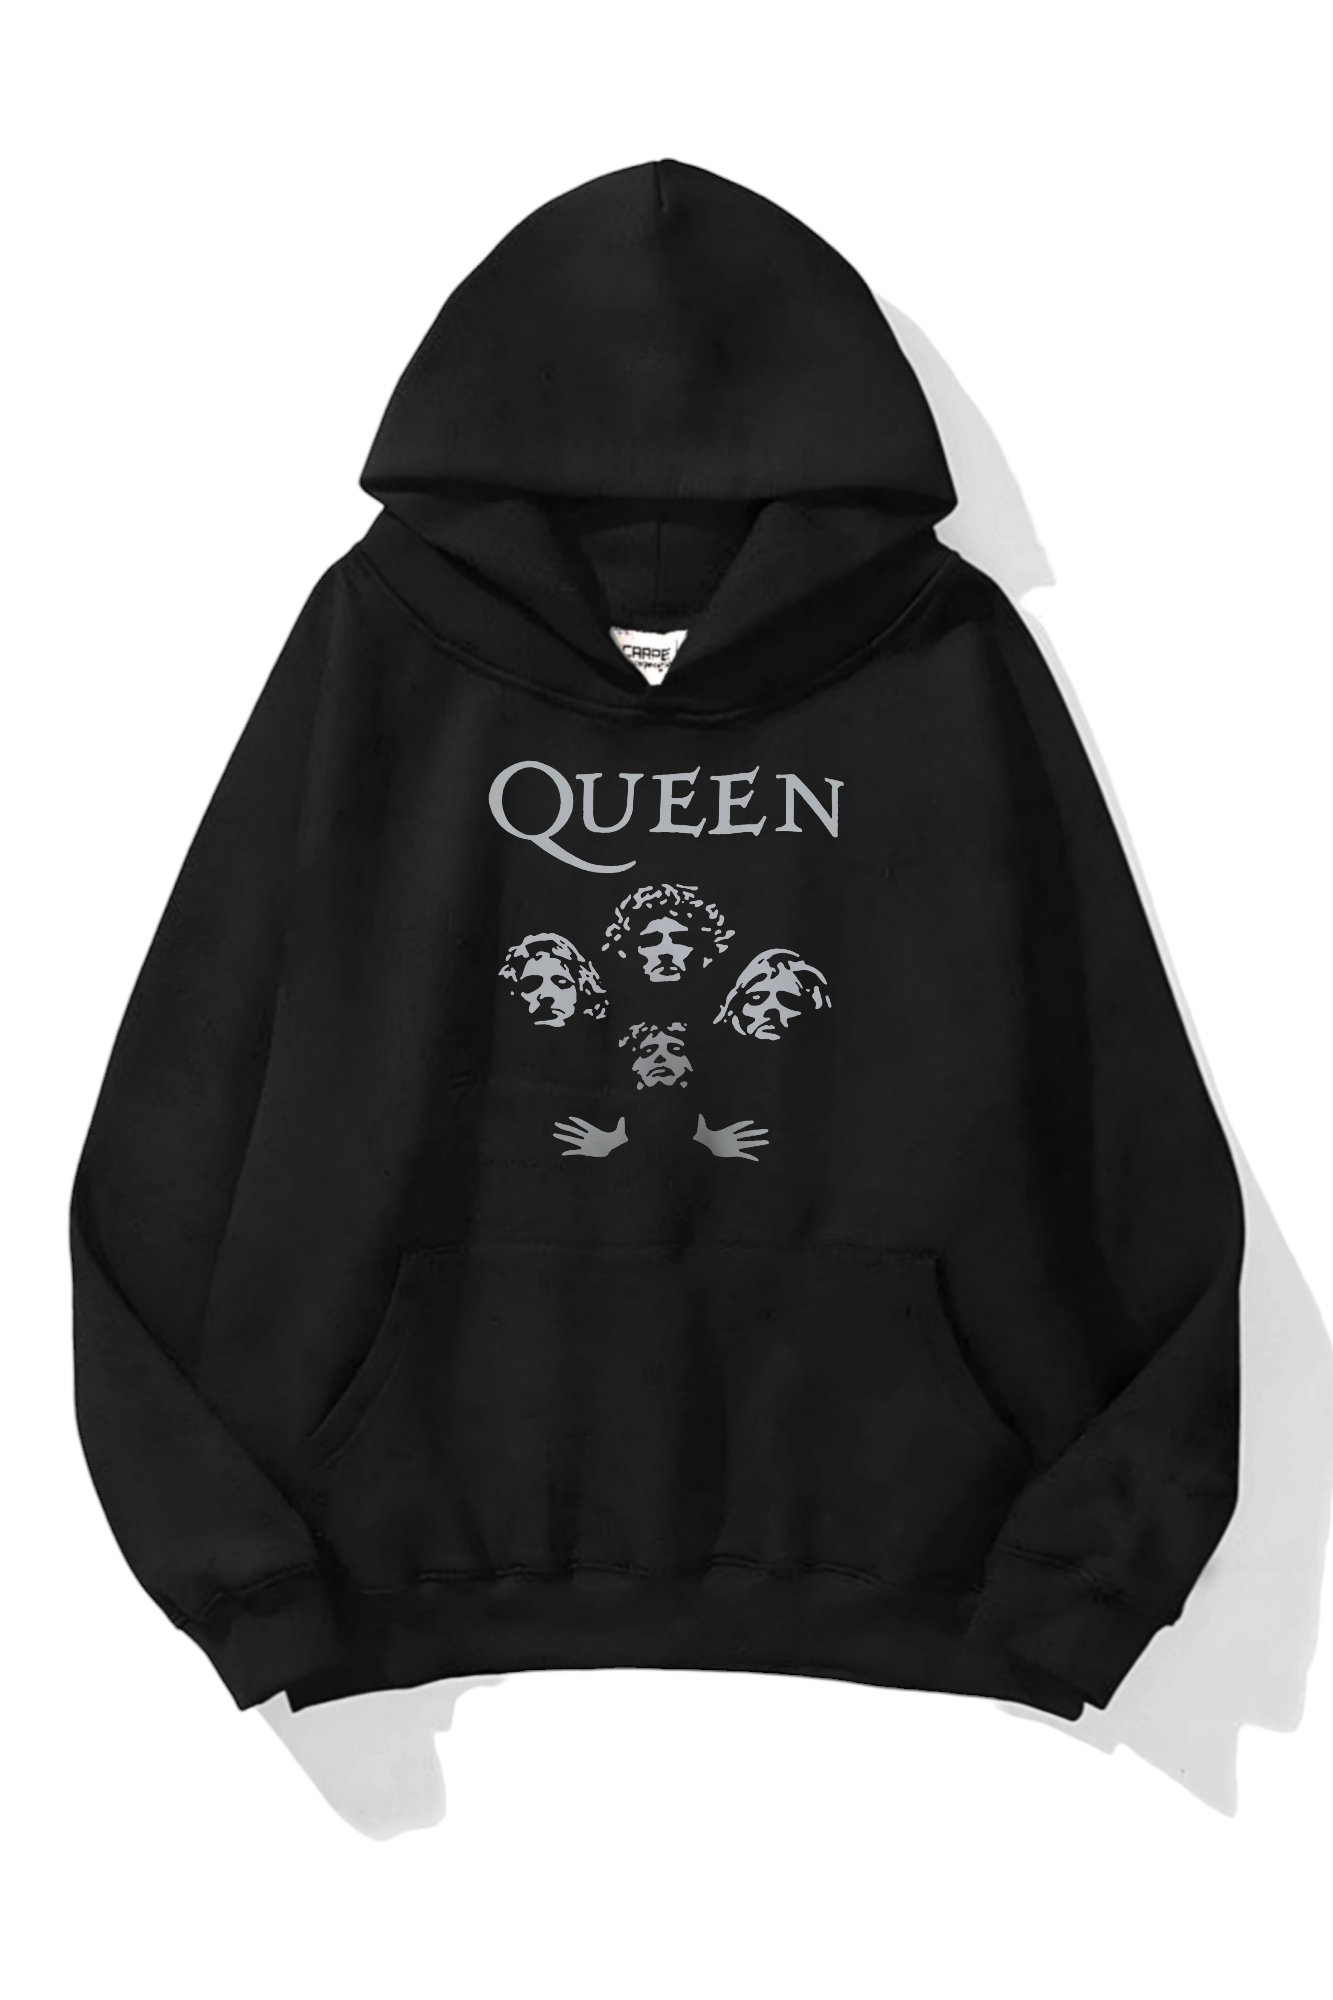 Queen 3 iplik Oversize Sweatshirt Ürününü Hemen İncele